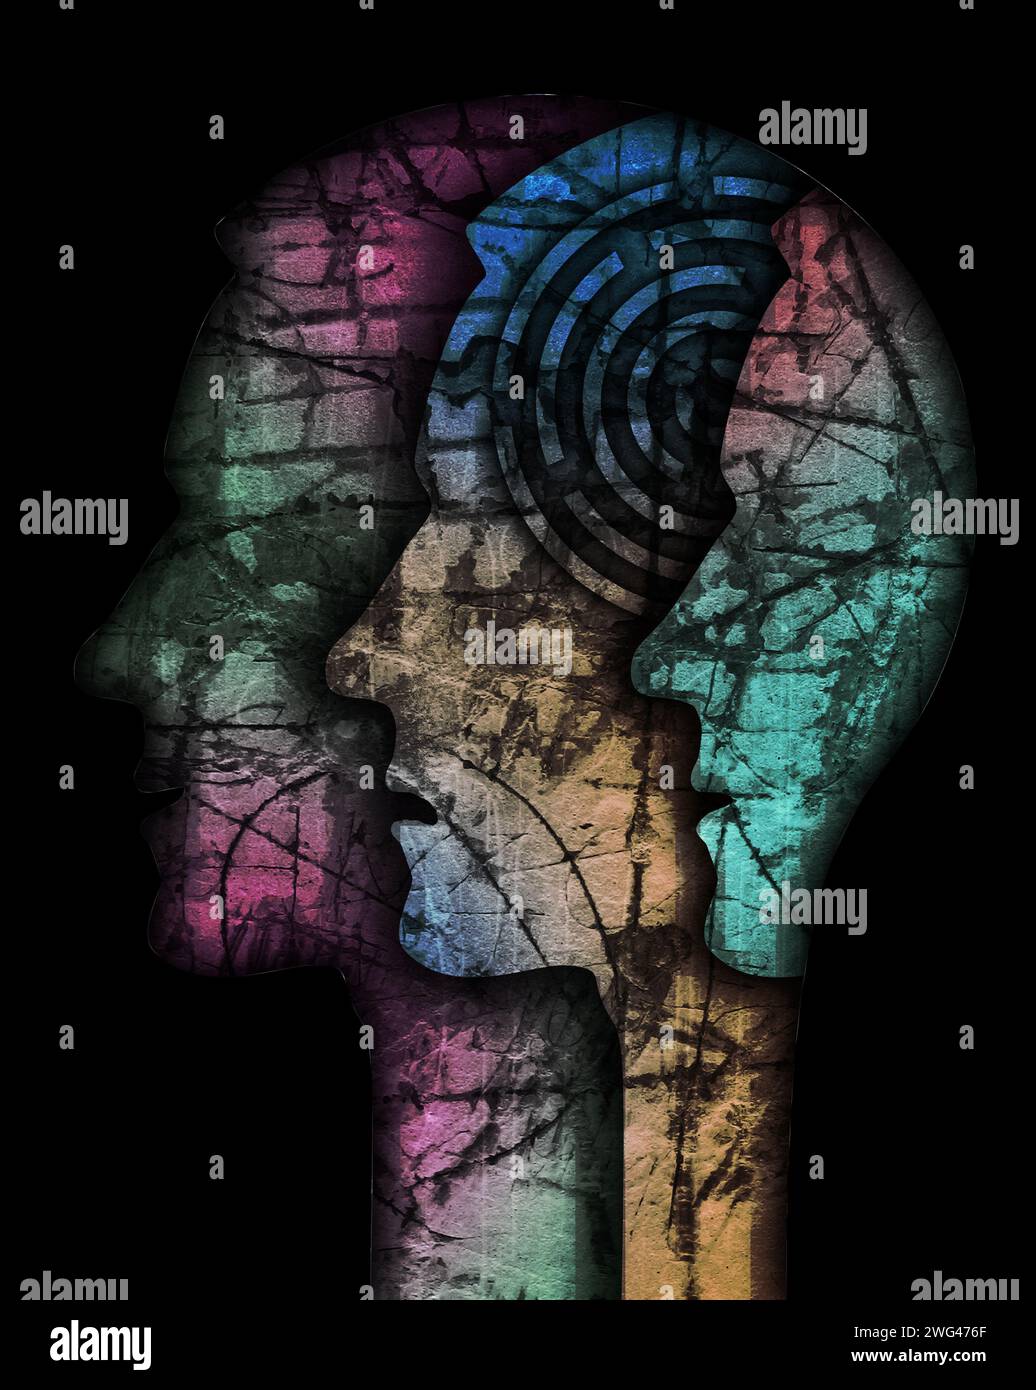 Silhouette de la tête masculine de schizophrénie. Illustration avec trois têtes mâles stylisées sur une texture grunge symbolisant la schizophrénie Dépression. Banque D'Images